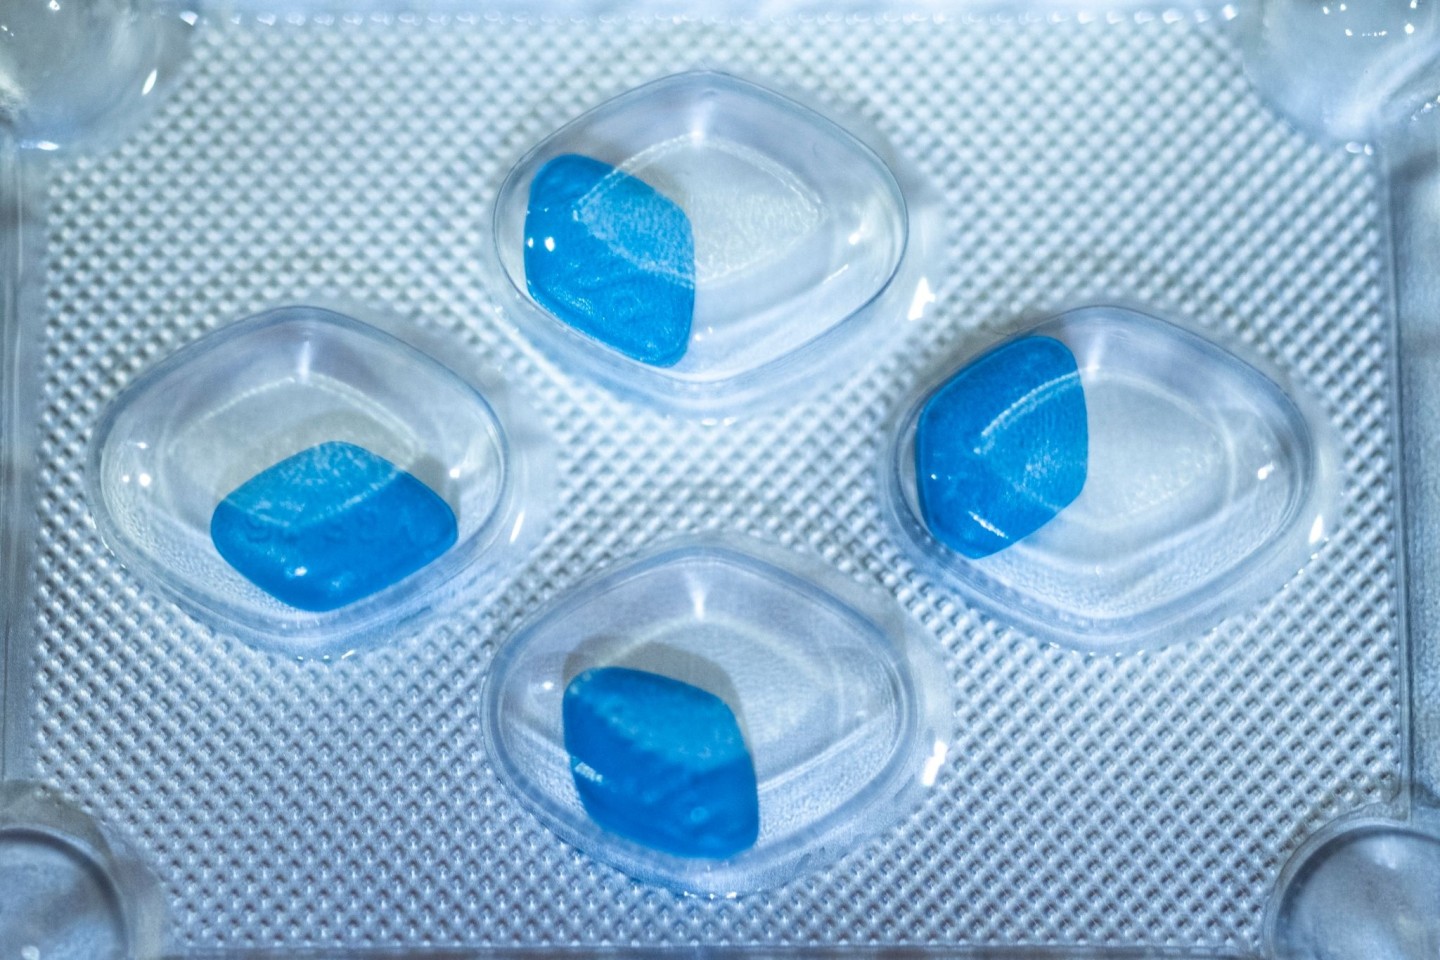 Viagra soll verschreibungspflichtig bleiben, empfehlen Experten.